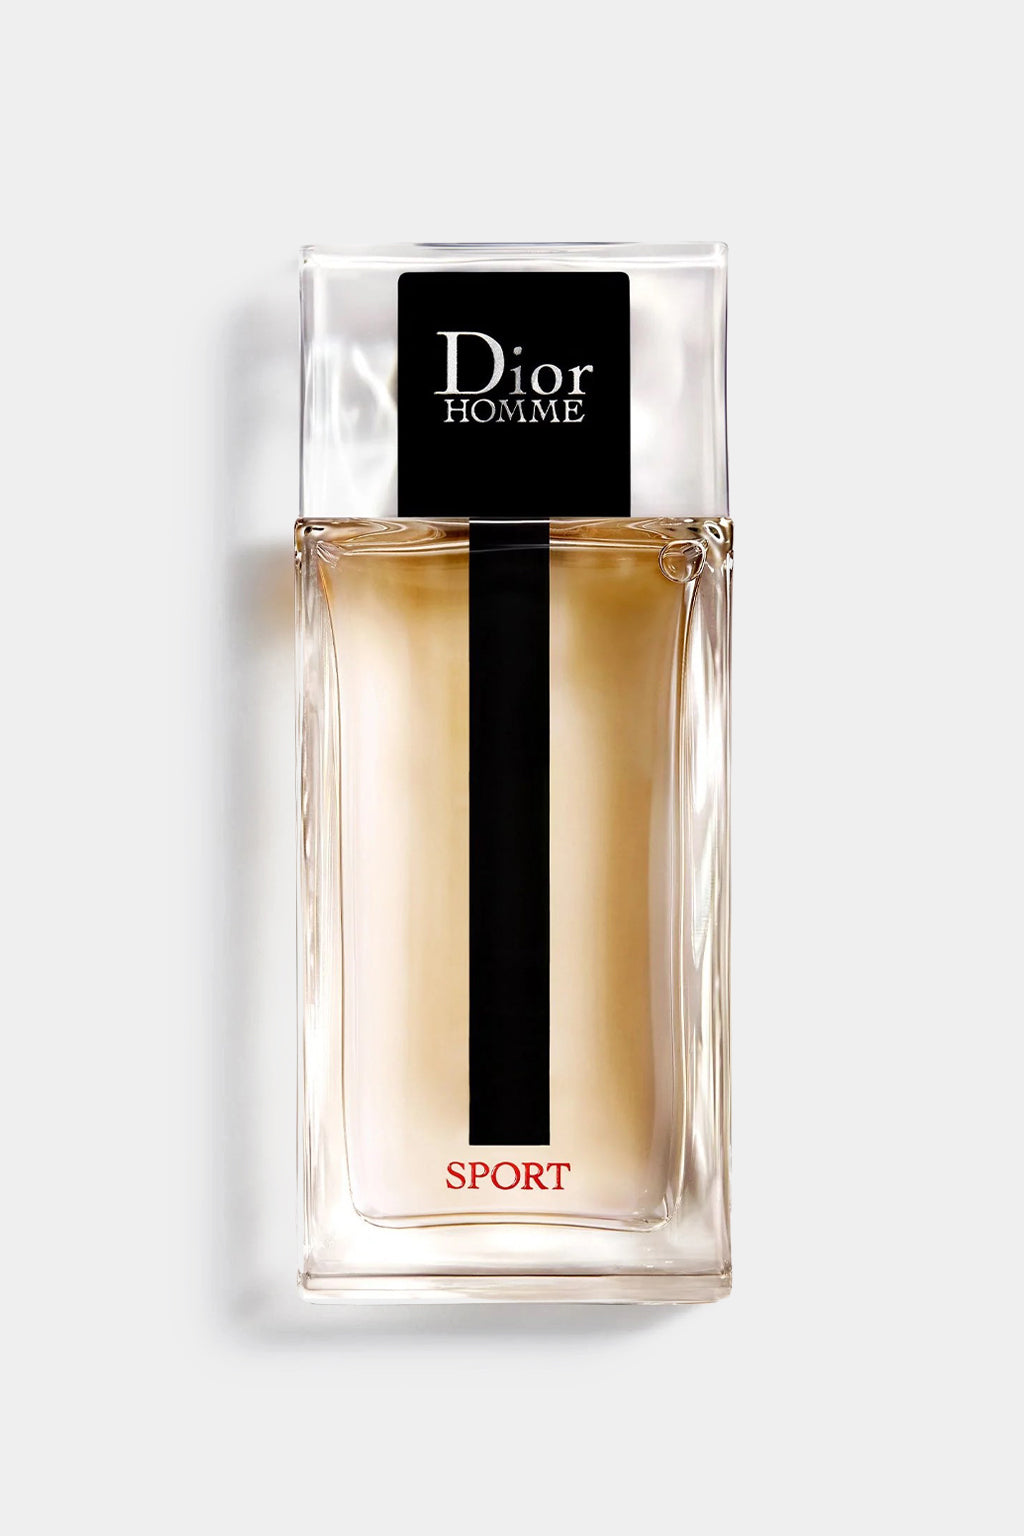 Christian Dior - Homme Sport Eau de Toilette